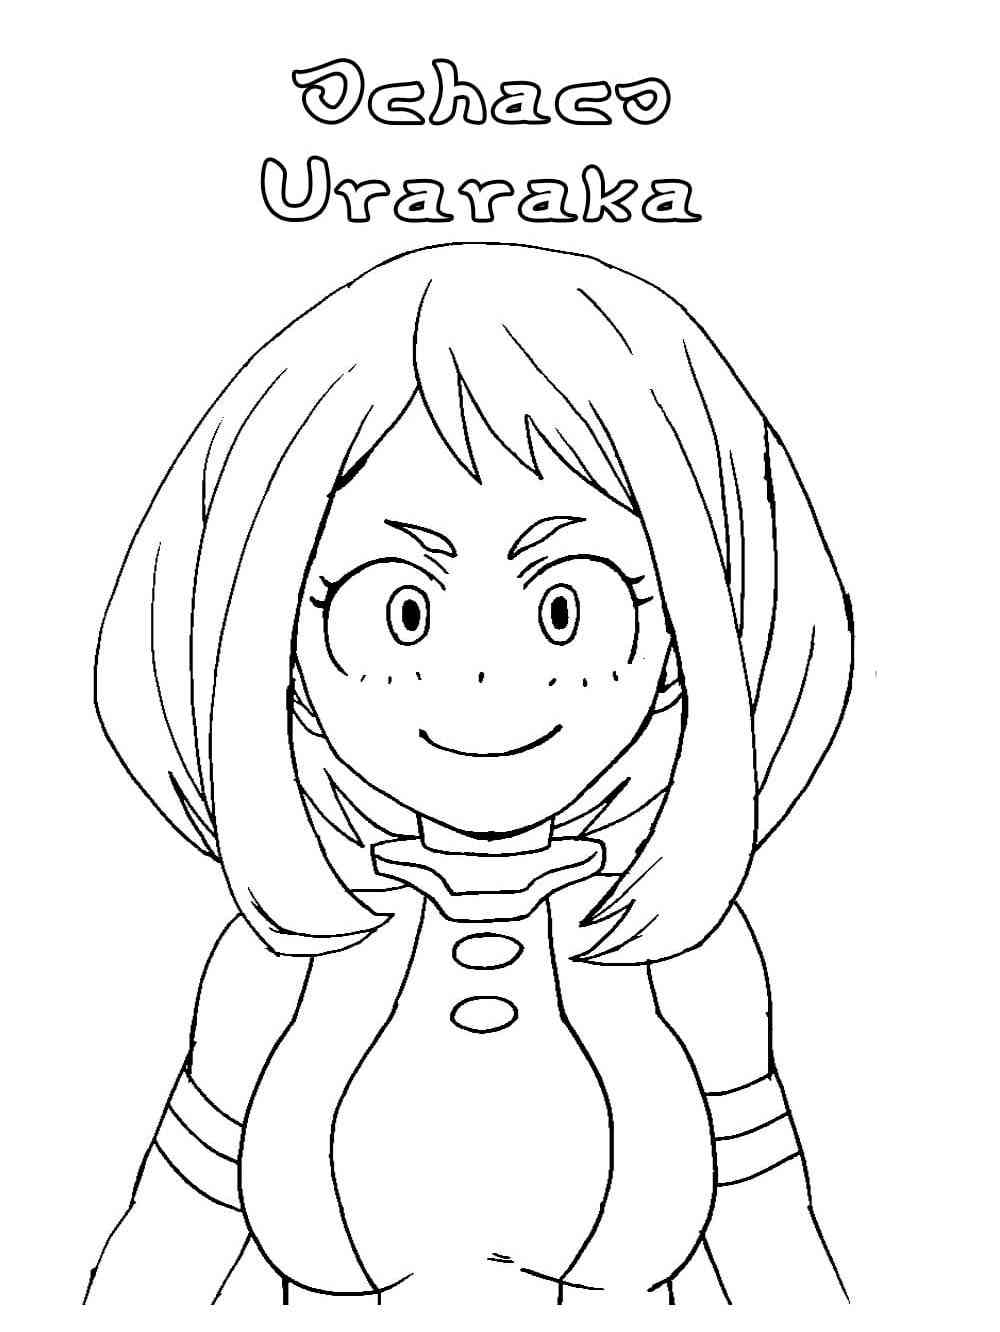 Ochako uraraka coloring pages